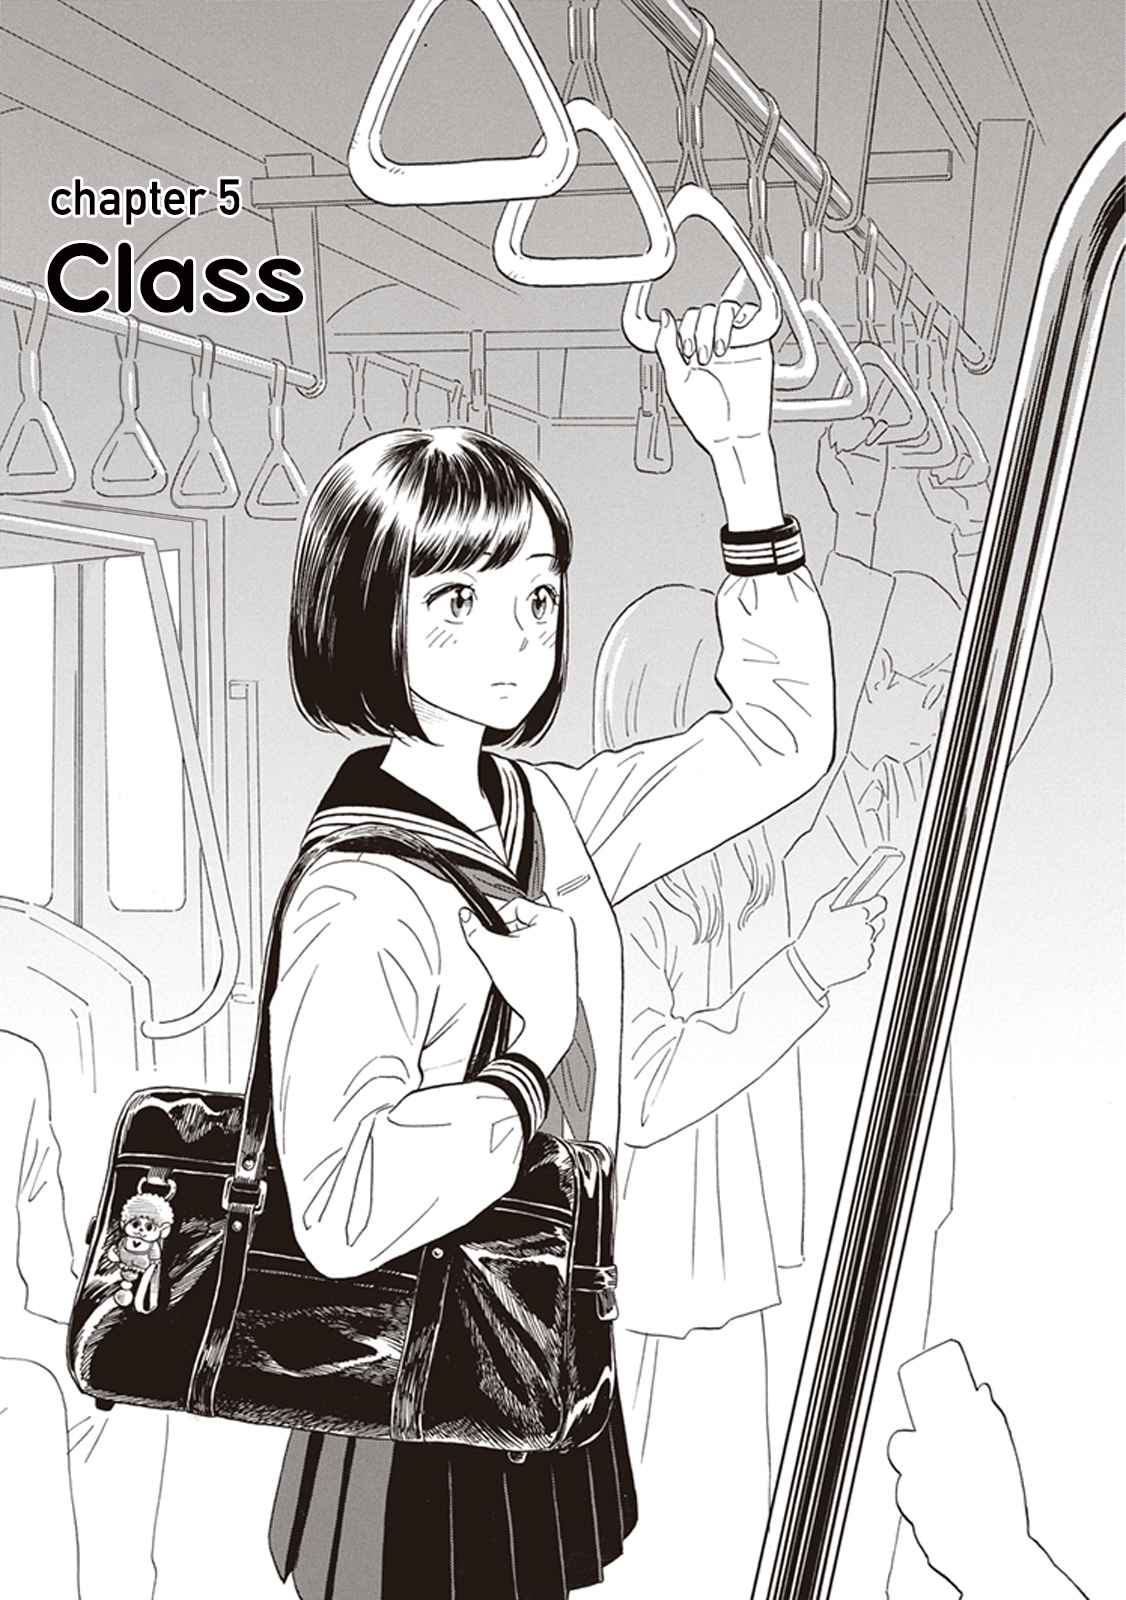 Kanojo wa Otou san Vol. 1 Ch. 5 Class